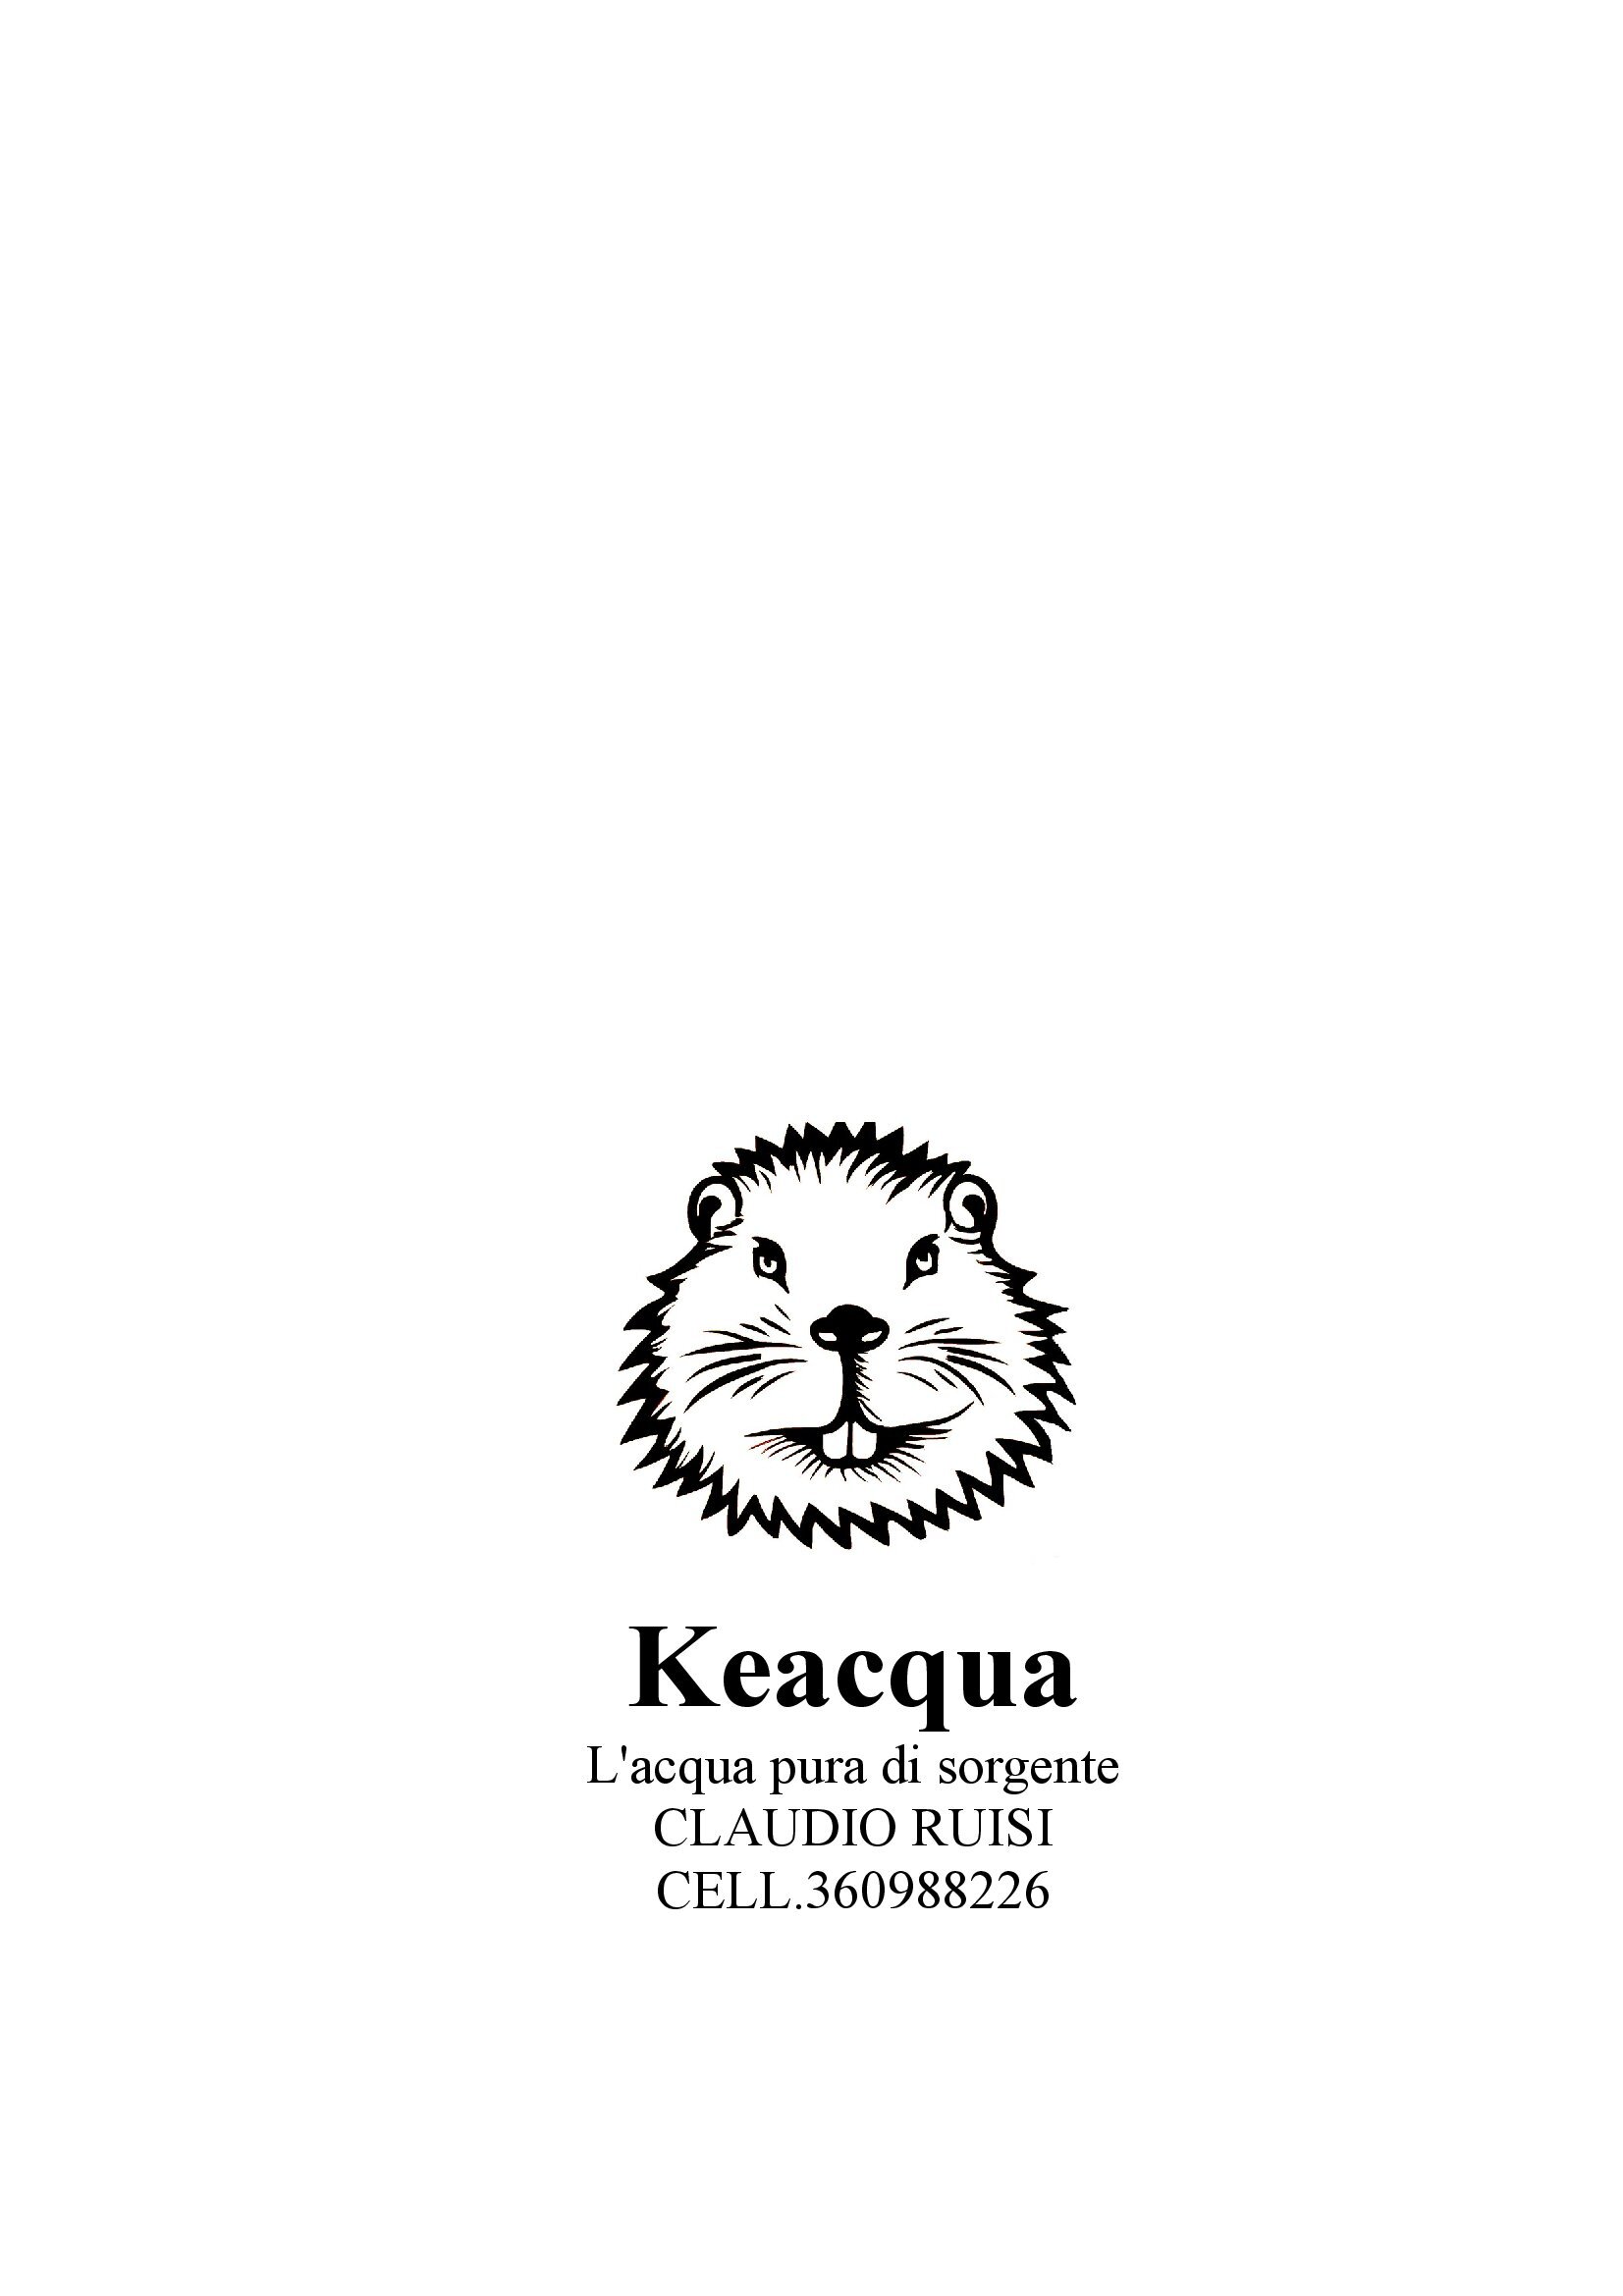 Keacqua